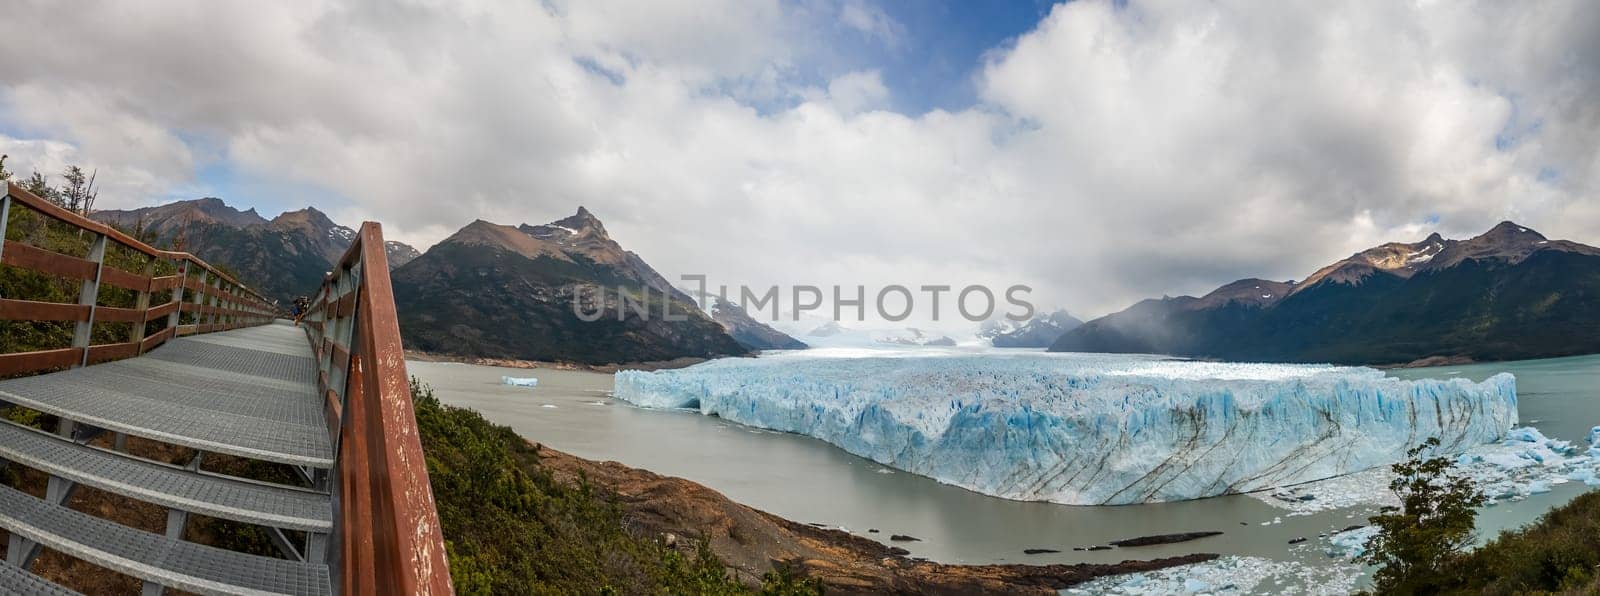 Panoramic View of Perito Moreno Glacier from Walking Trail by FerradalFCG